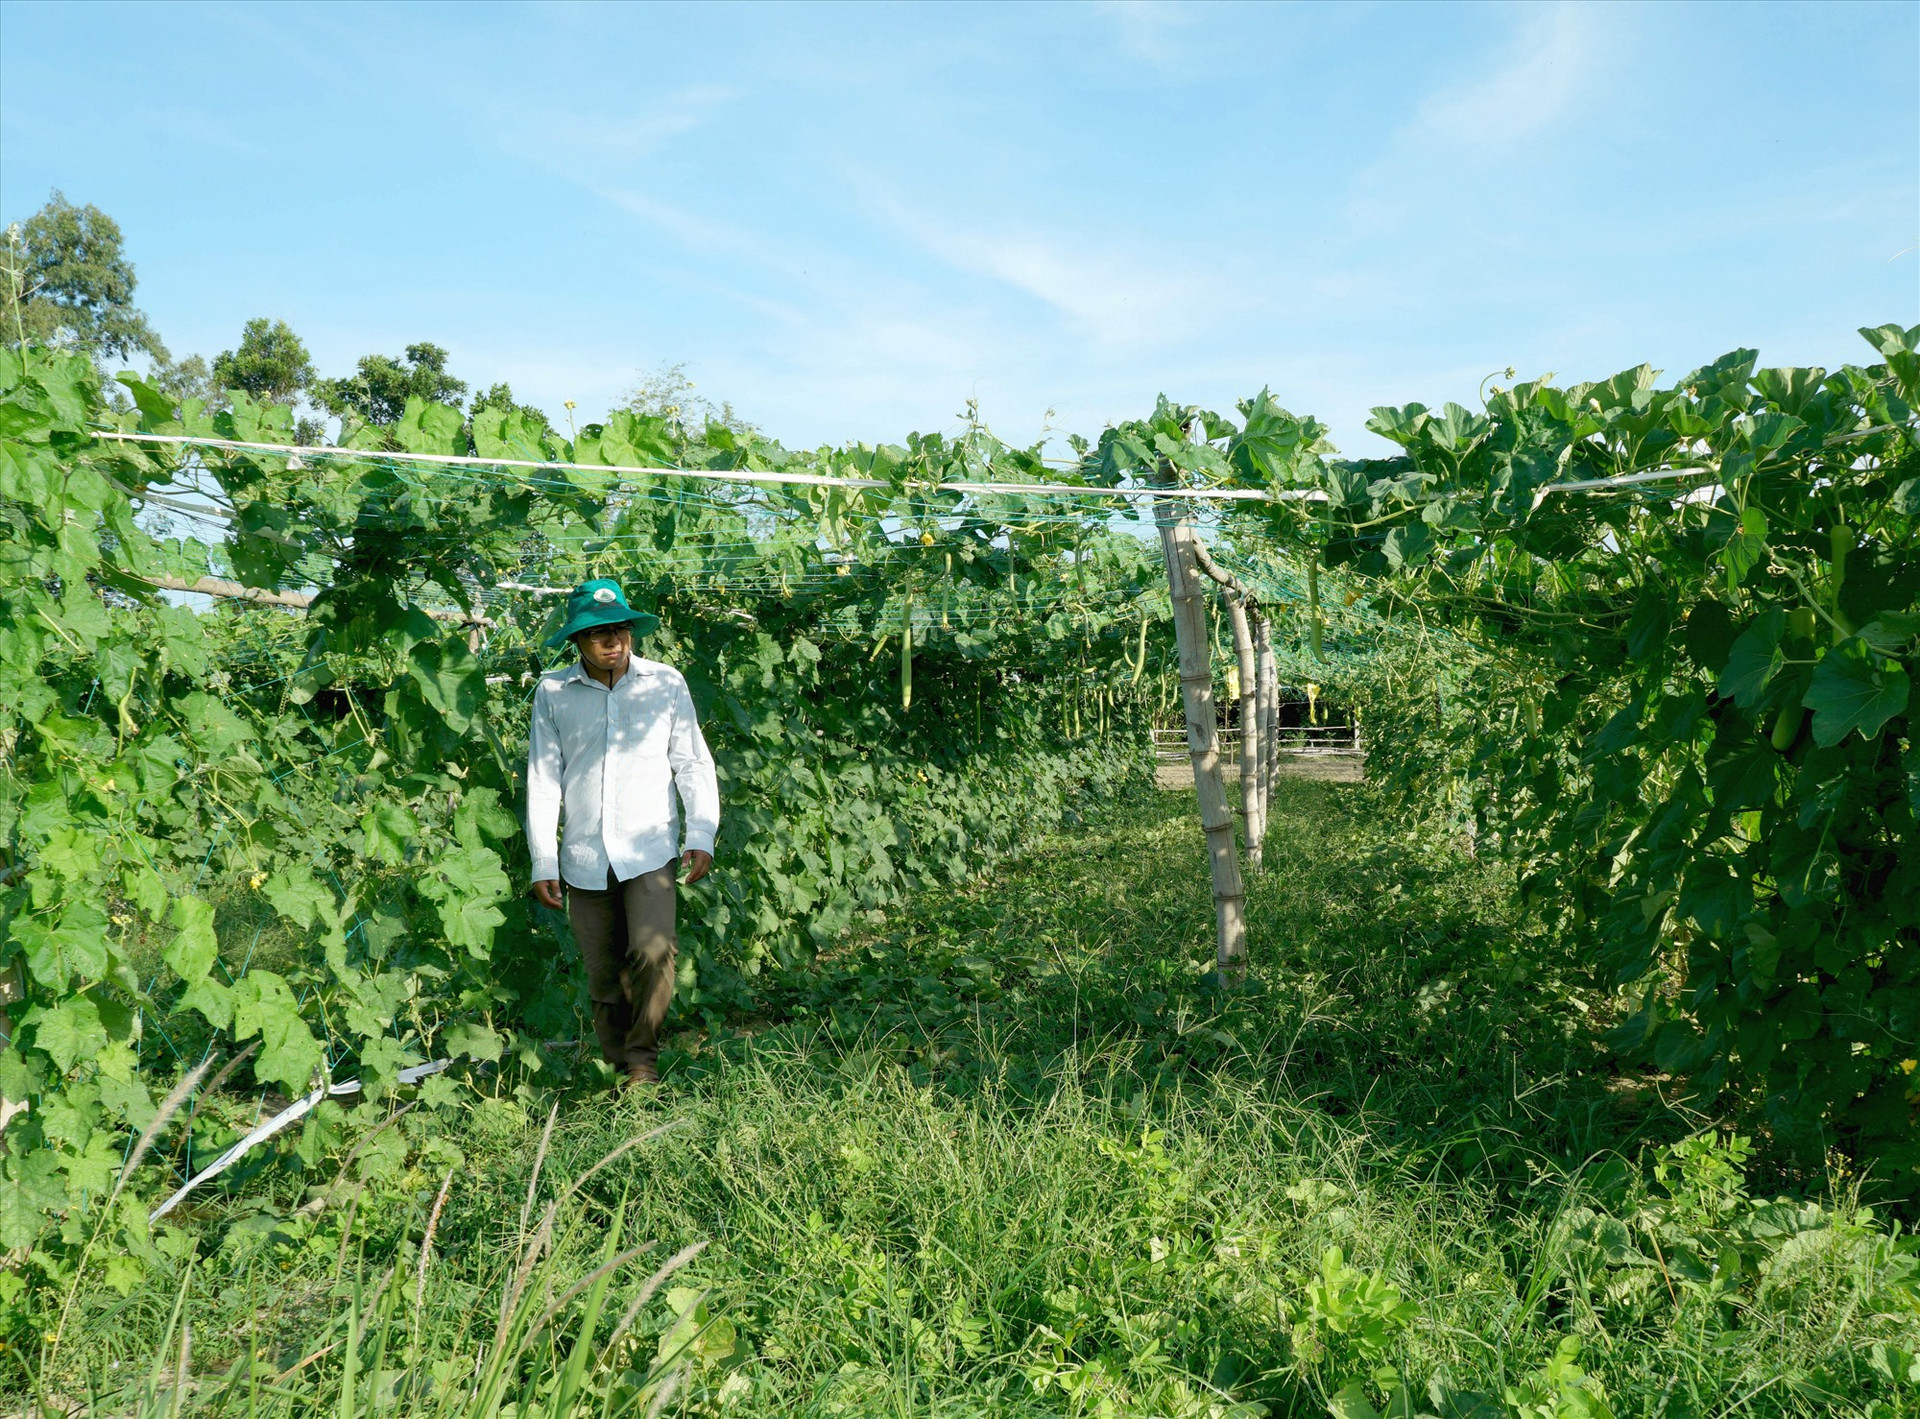 Nhiều vườn rau ở Tam Ngọc quanh năm xanh tốt, cải thiện nguồn thu nhập cho nông dân địa phương. Ảnh: Nguyễn Điện Ngọc